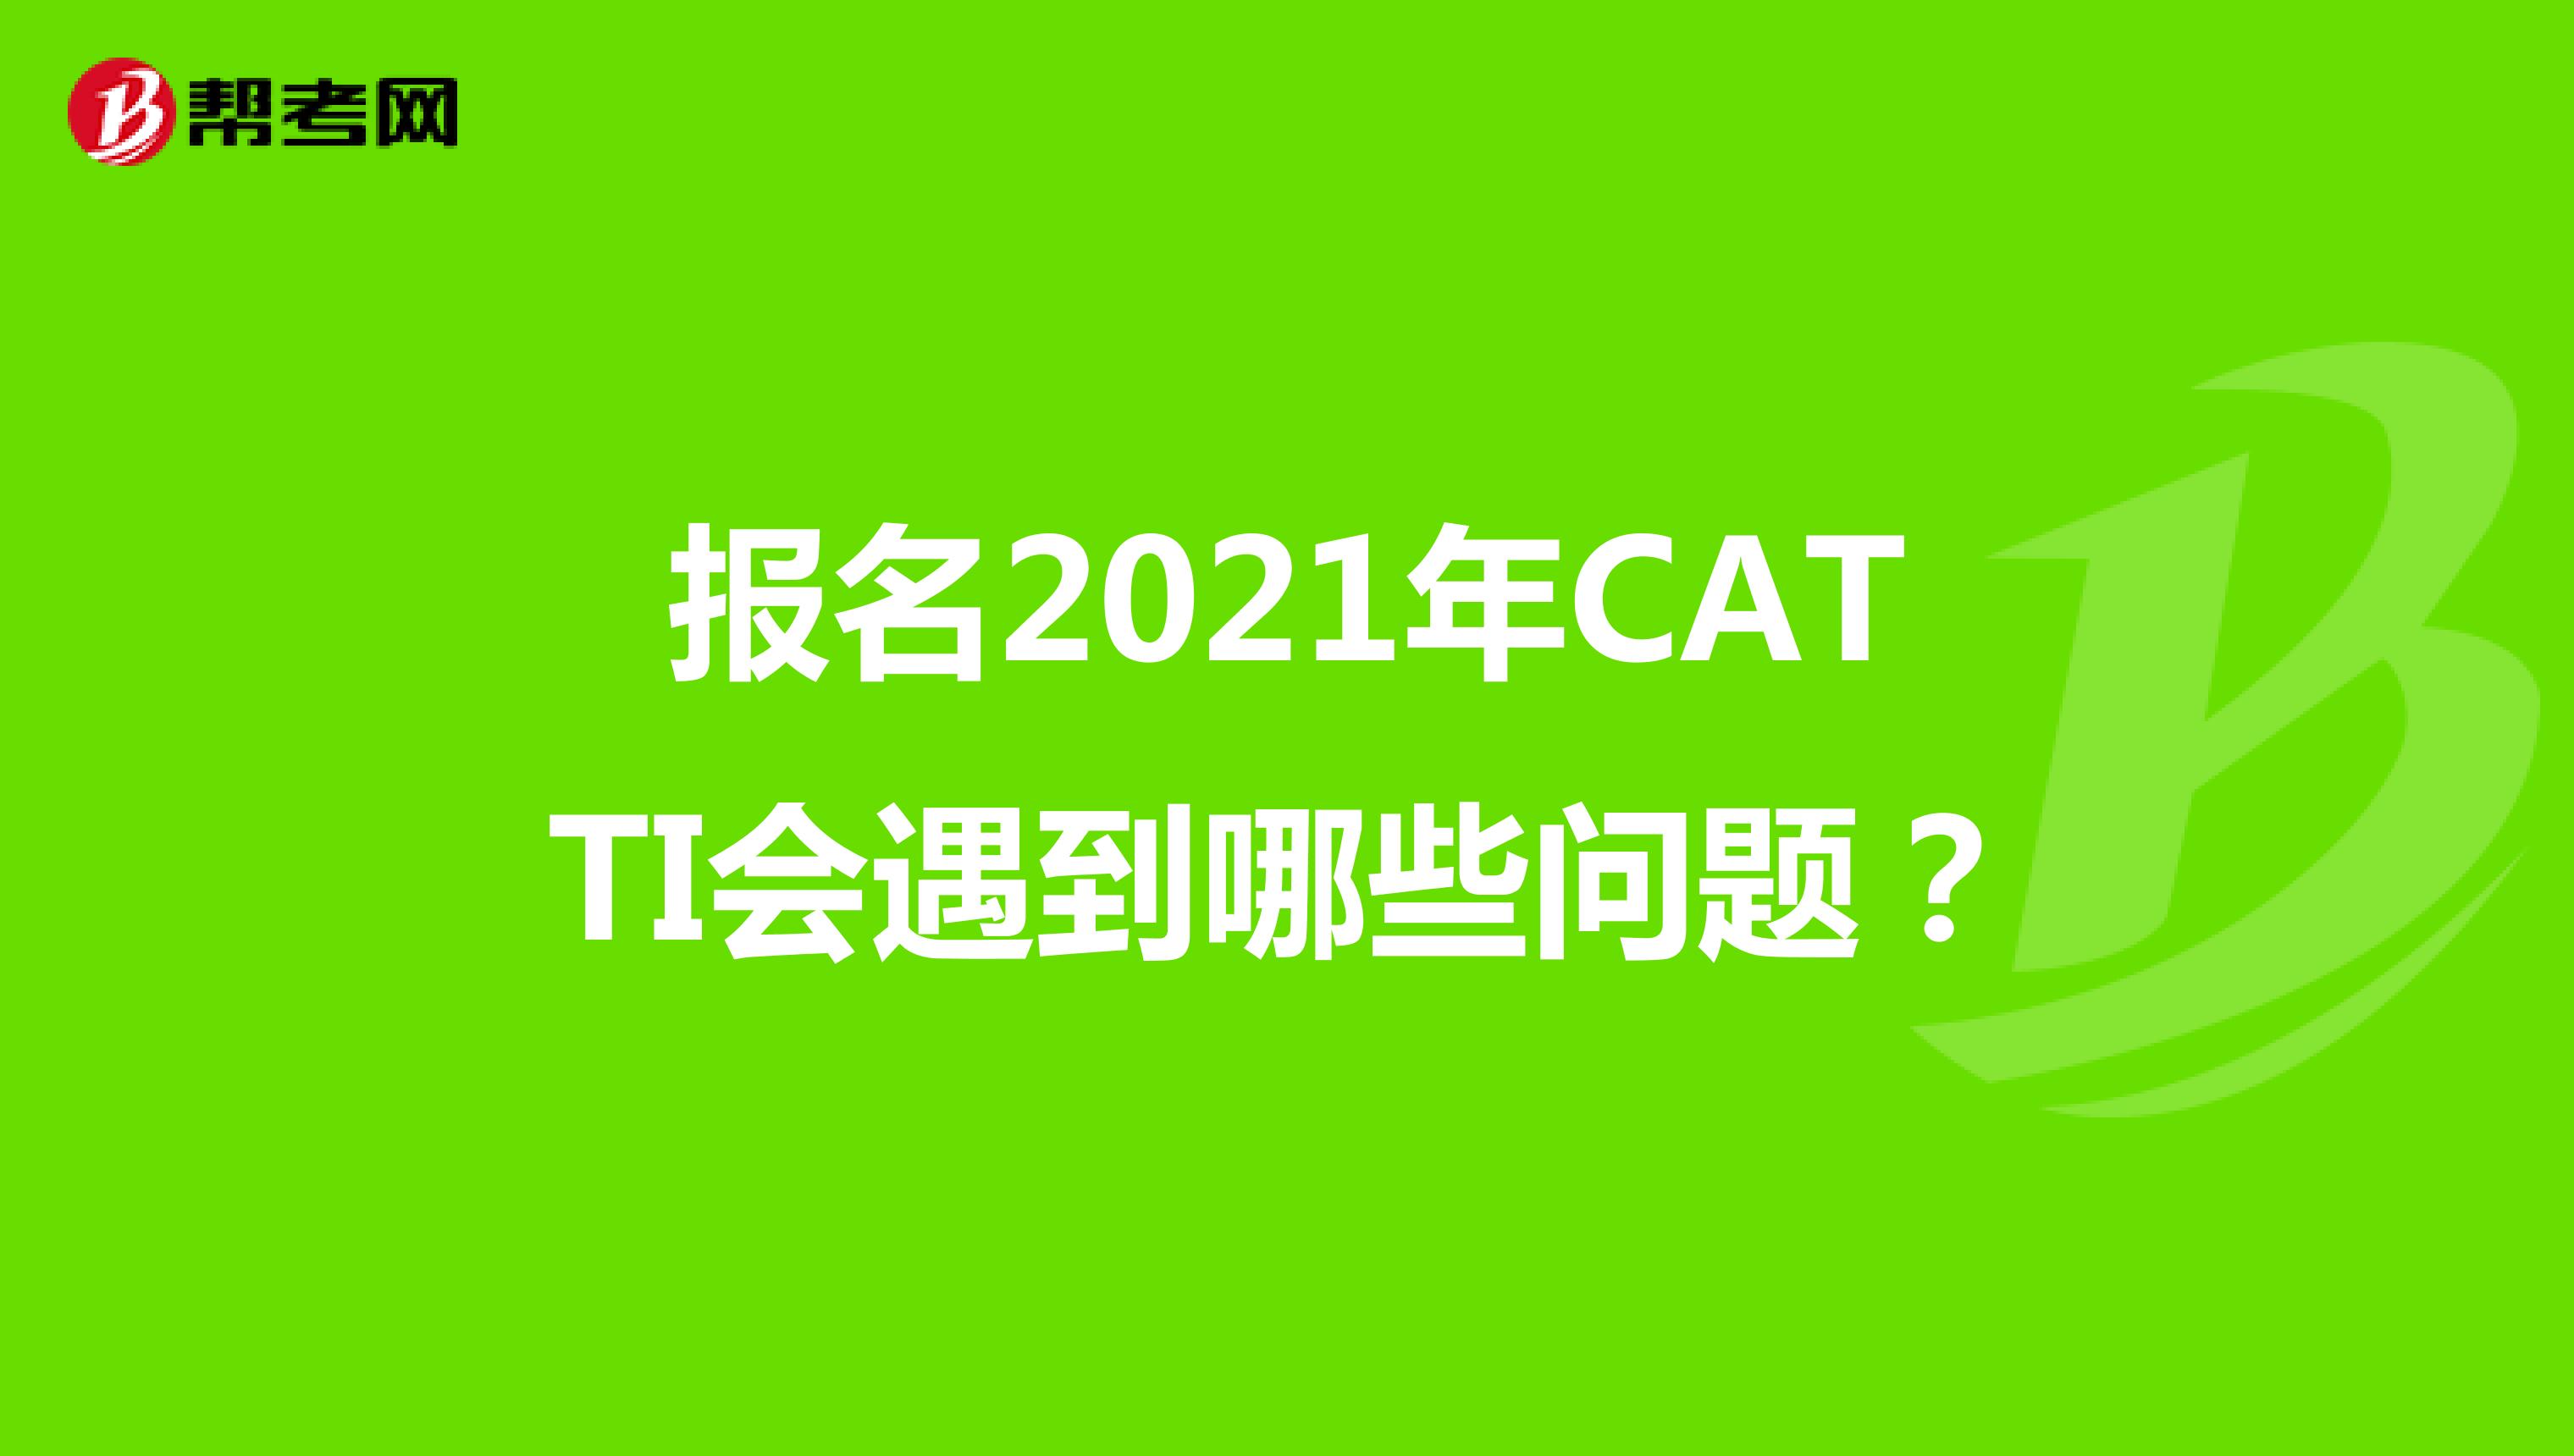 报名2021年CATTI会遇到哪些问题？